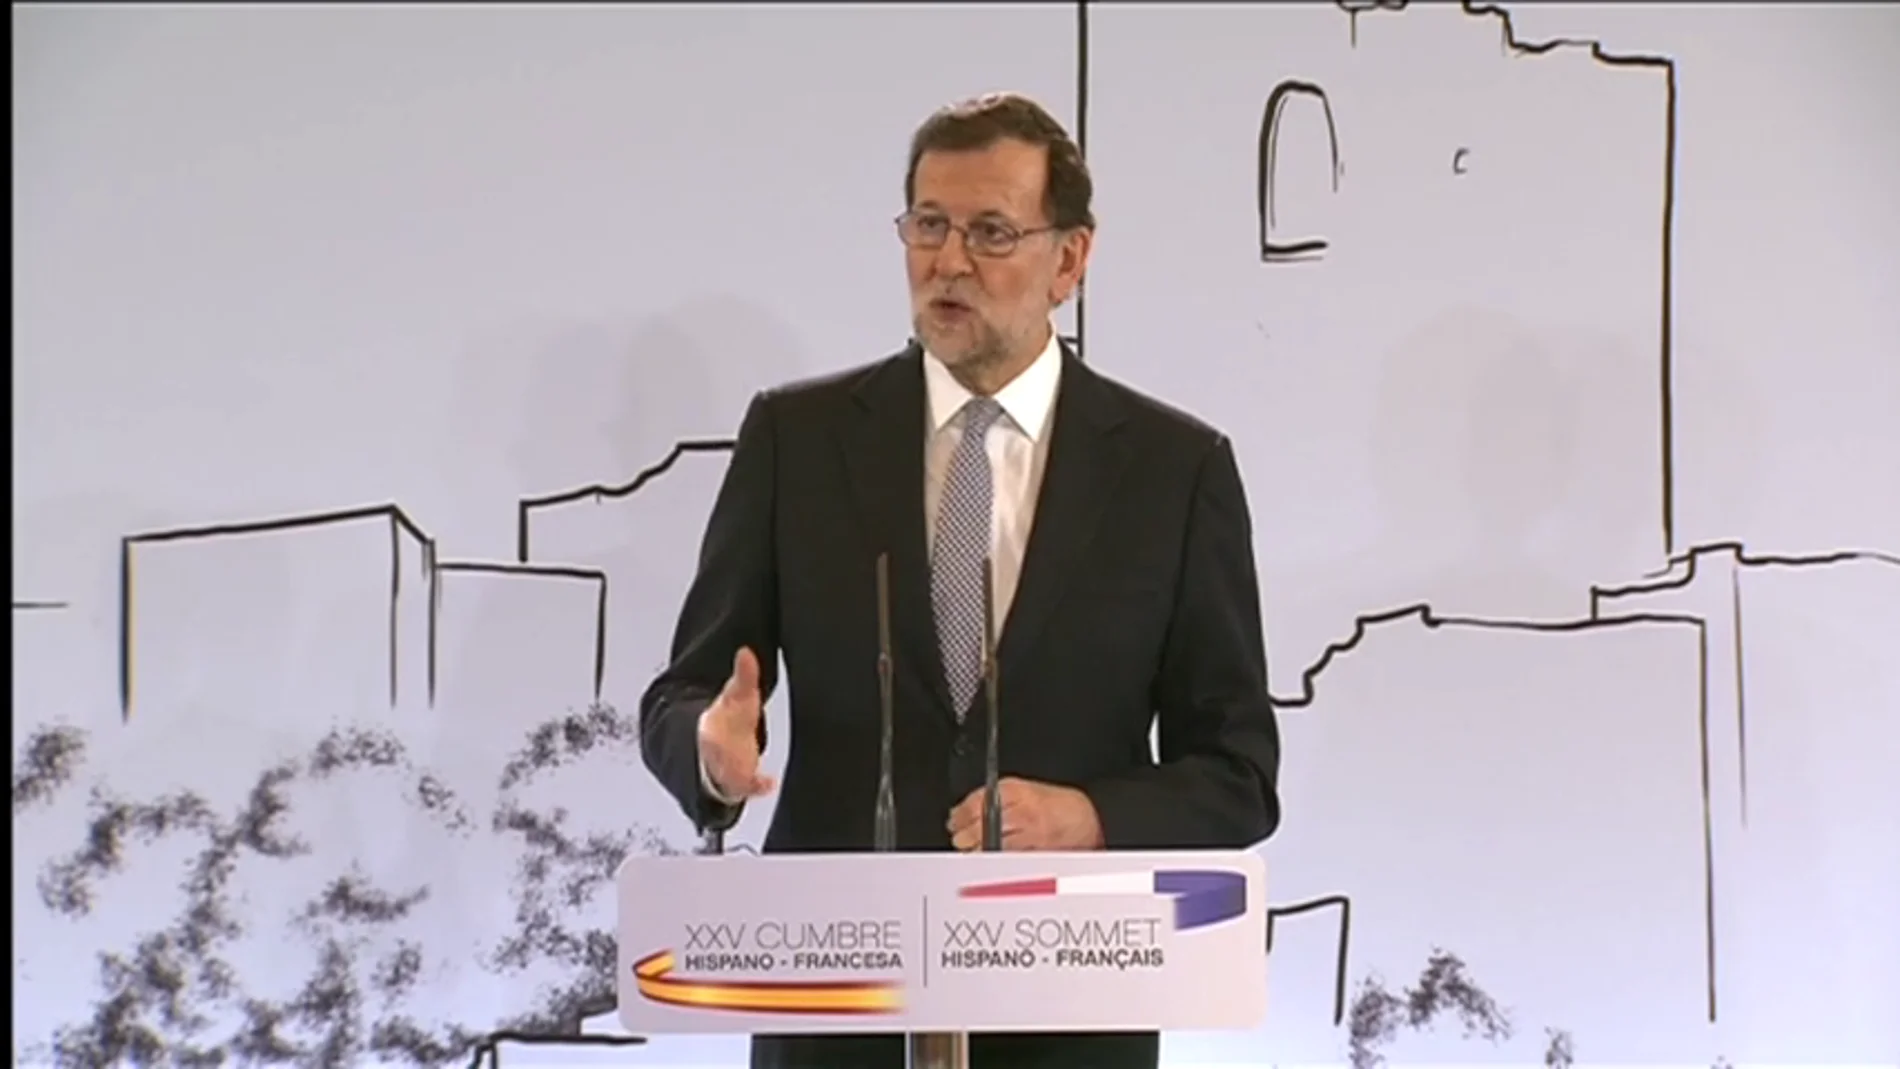 Frame 57.462052 de: Rajoy reitera que hablará con Cataluña sobre los problemas reales de los ciudadanos, no para celebrar un referéndum